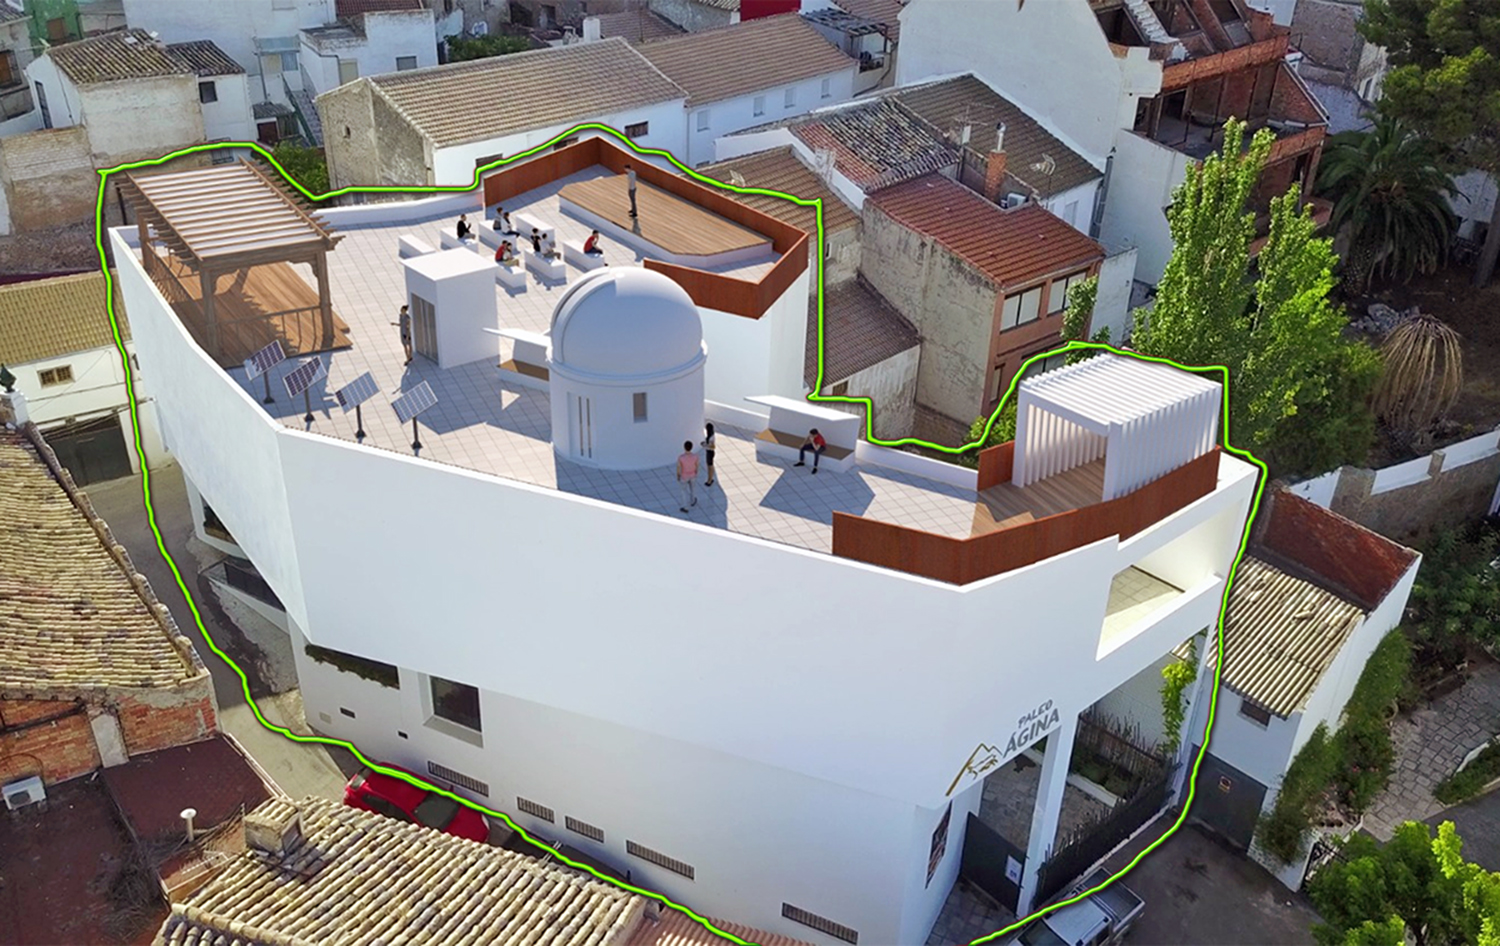 El Ayuntamiento de Bedmar-Garciez instalará un observatorio astronómico en la terraza del Centro de Investigaciones Paleomágina